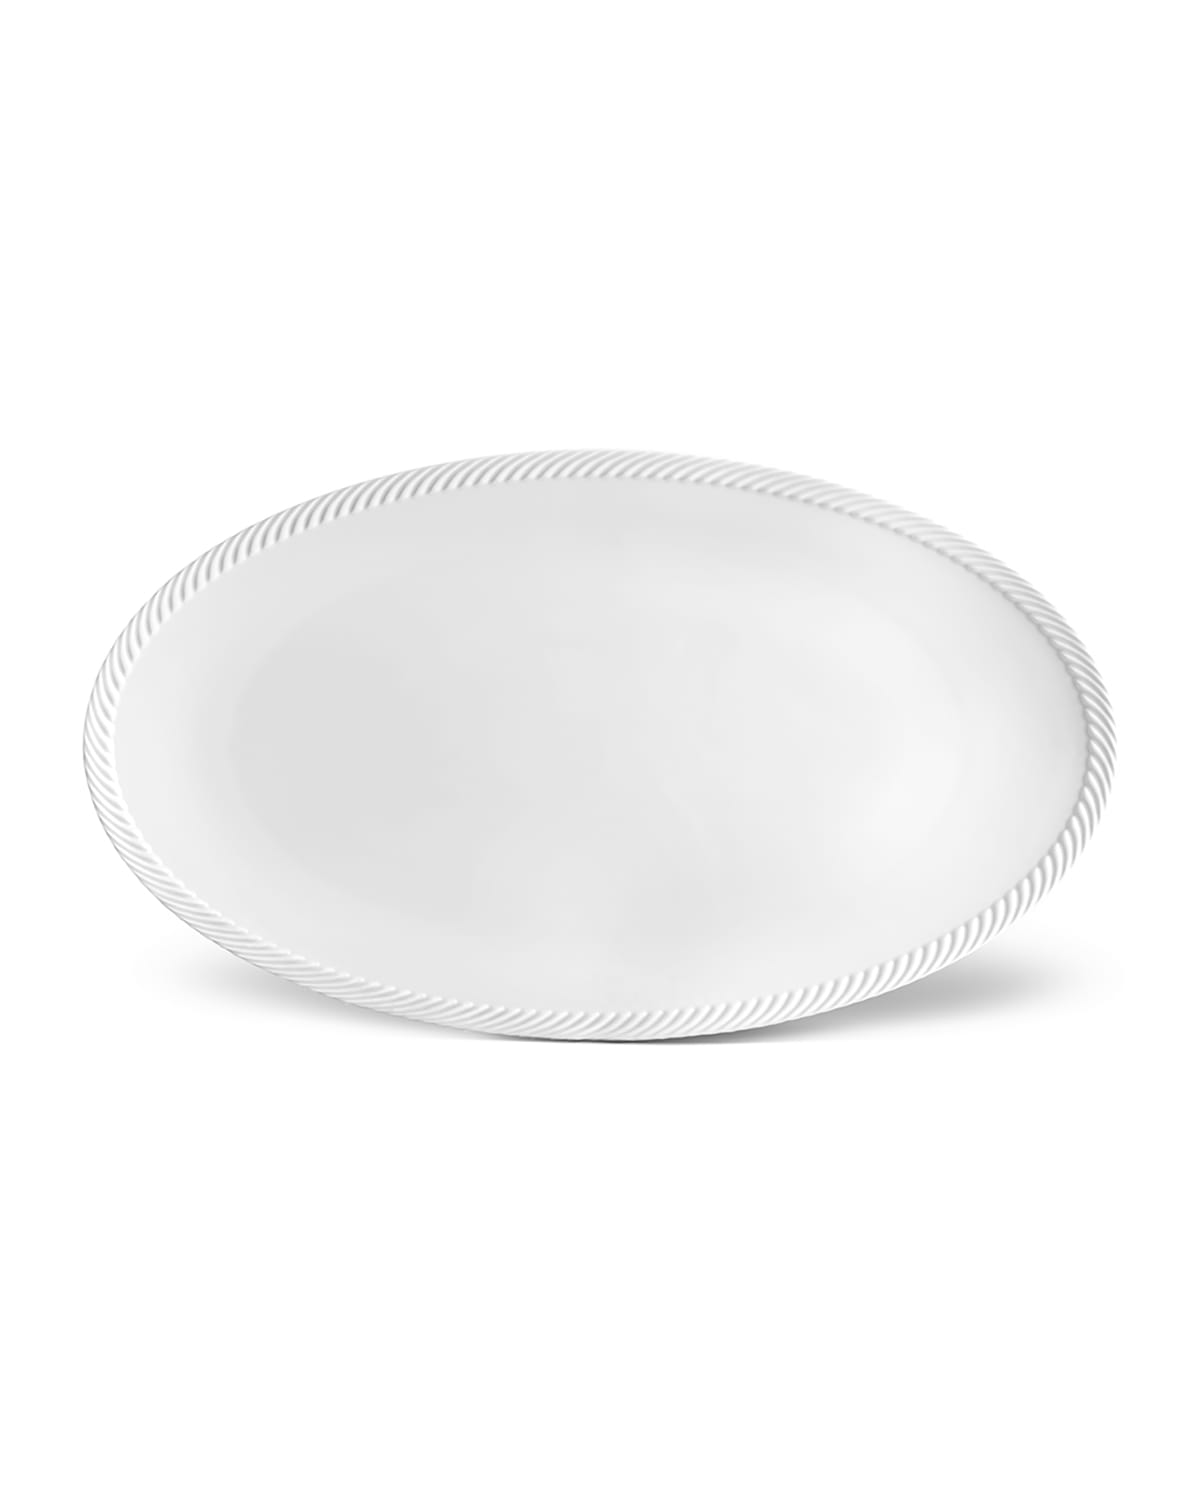 Shop L'objet Corde Large Oval Platter, White